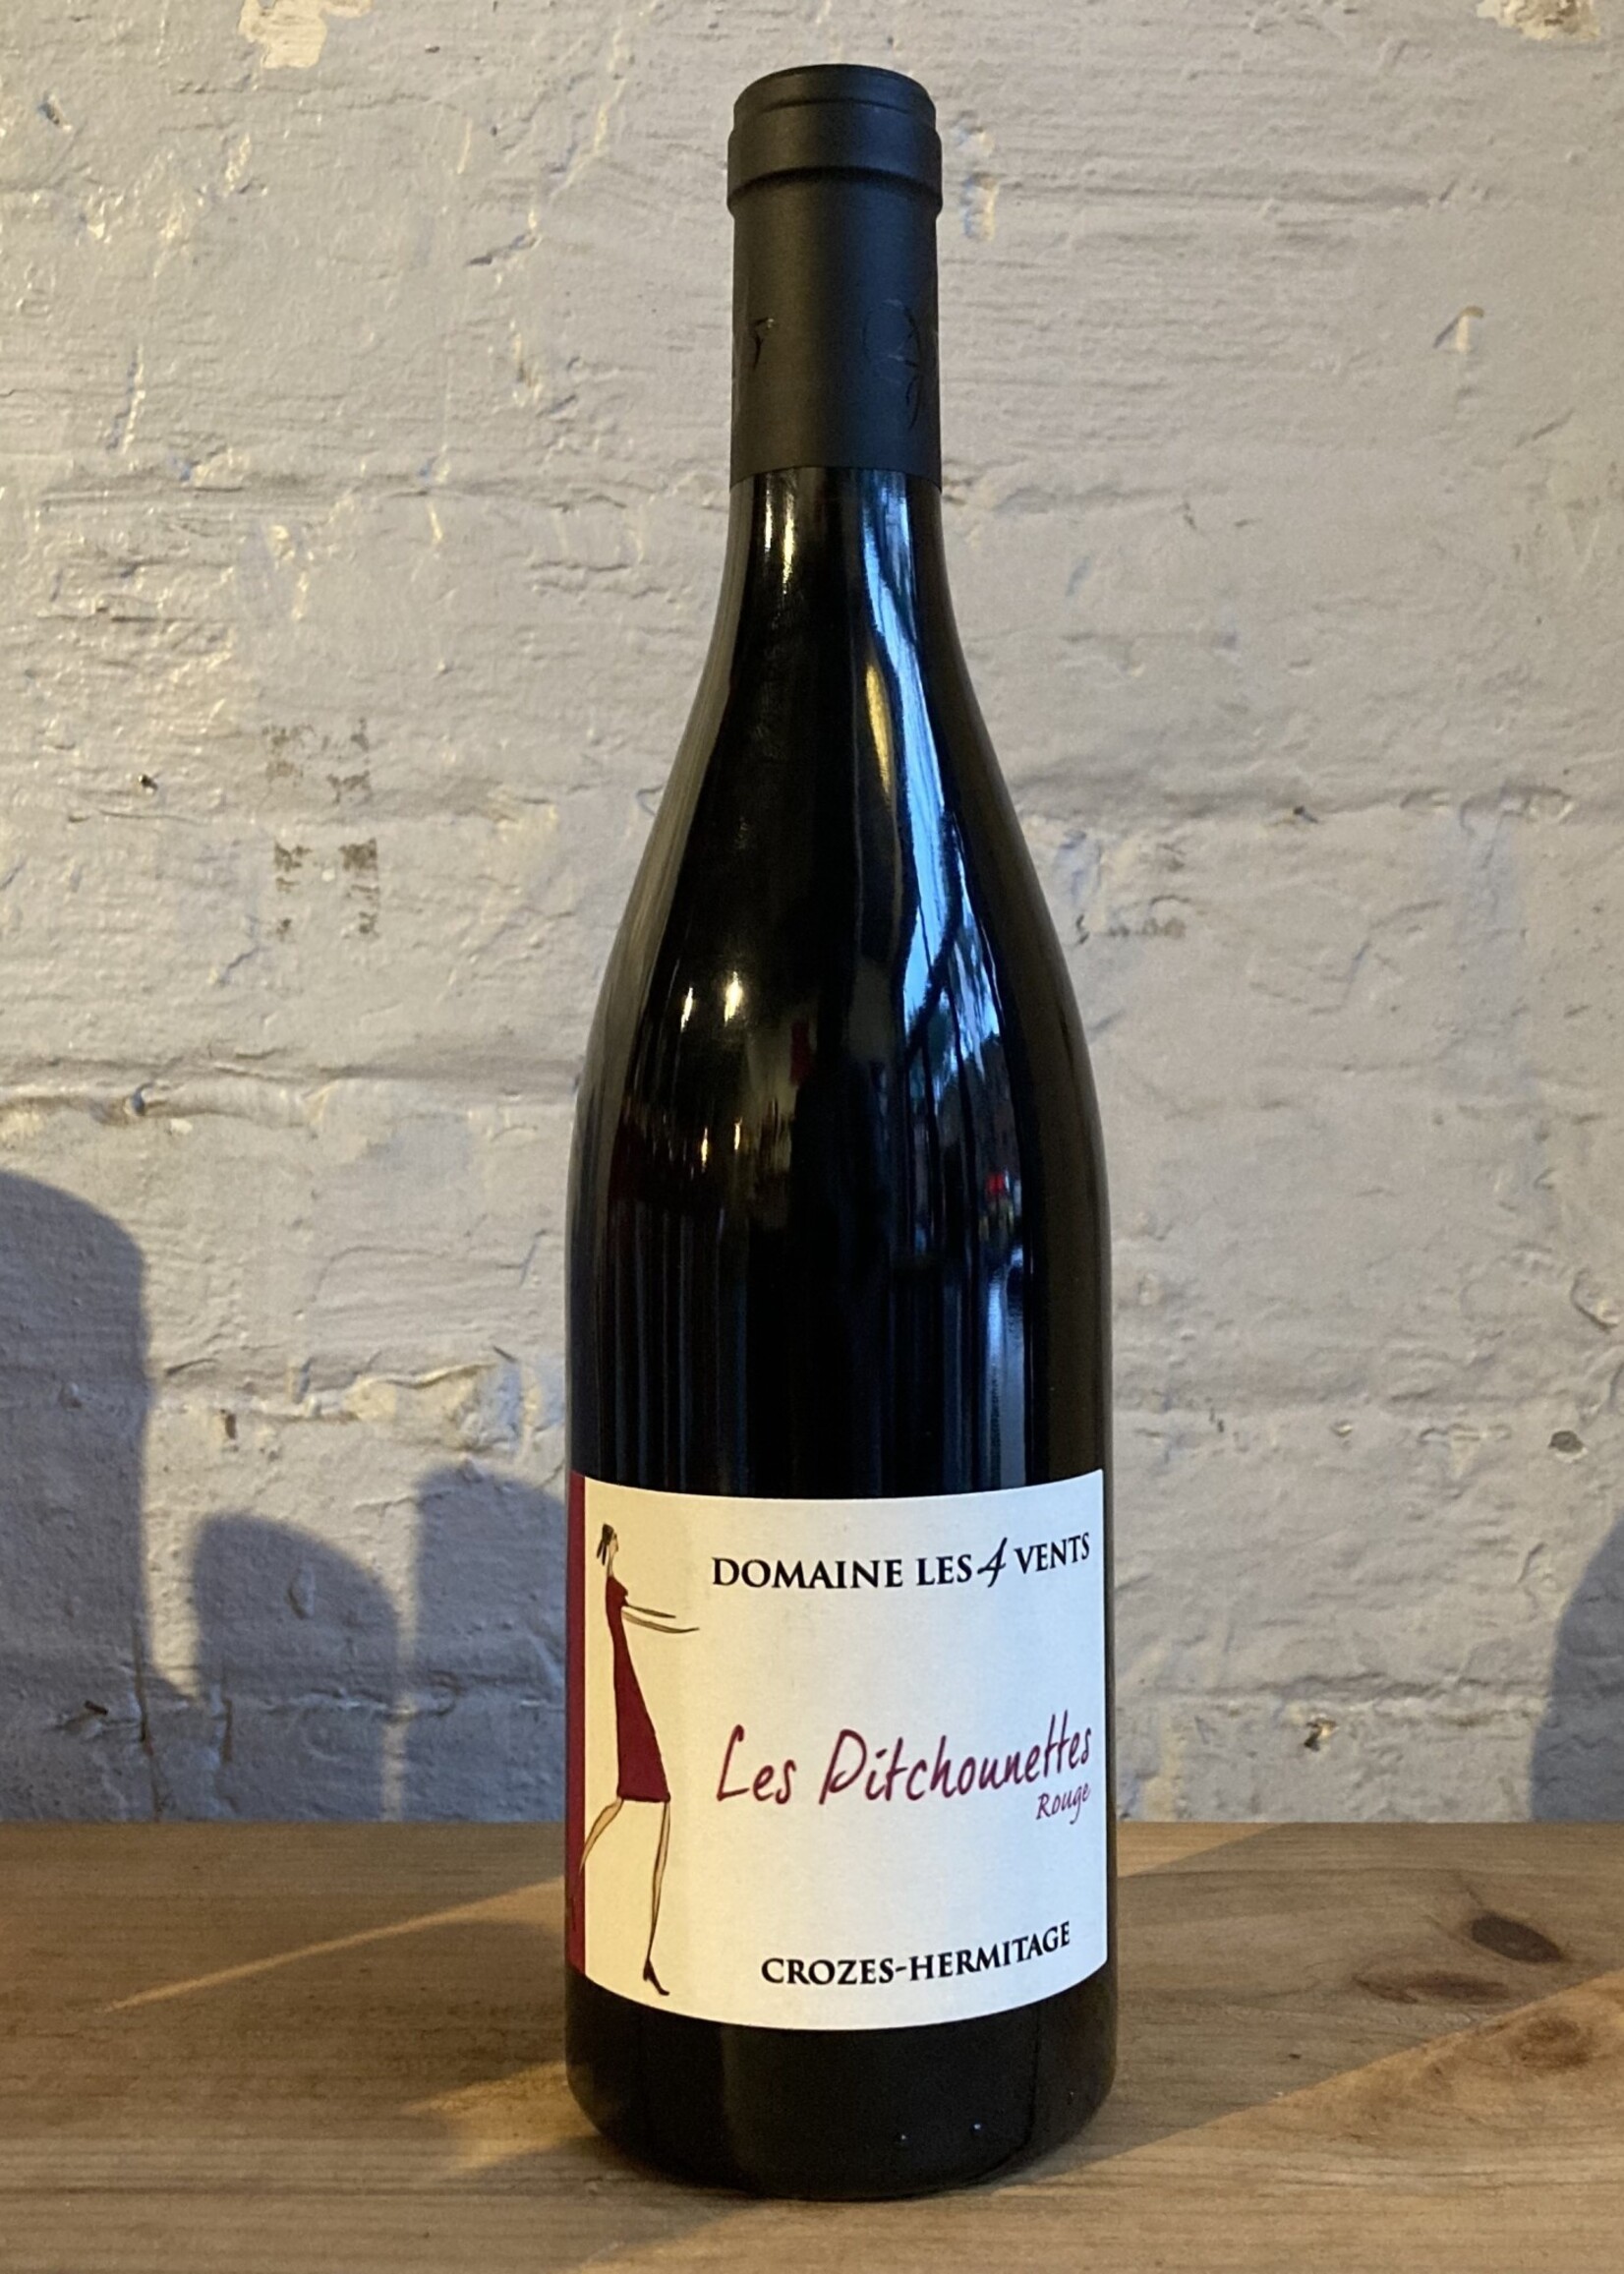 Wine 2020 Domaine Les 4 Vents Les Pitchounettes Rouge - Crozes-Hermitage, Rhone Valley, France (750ml)